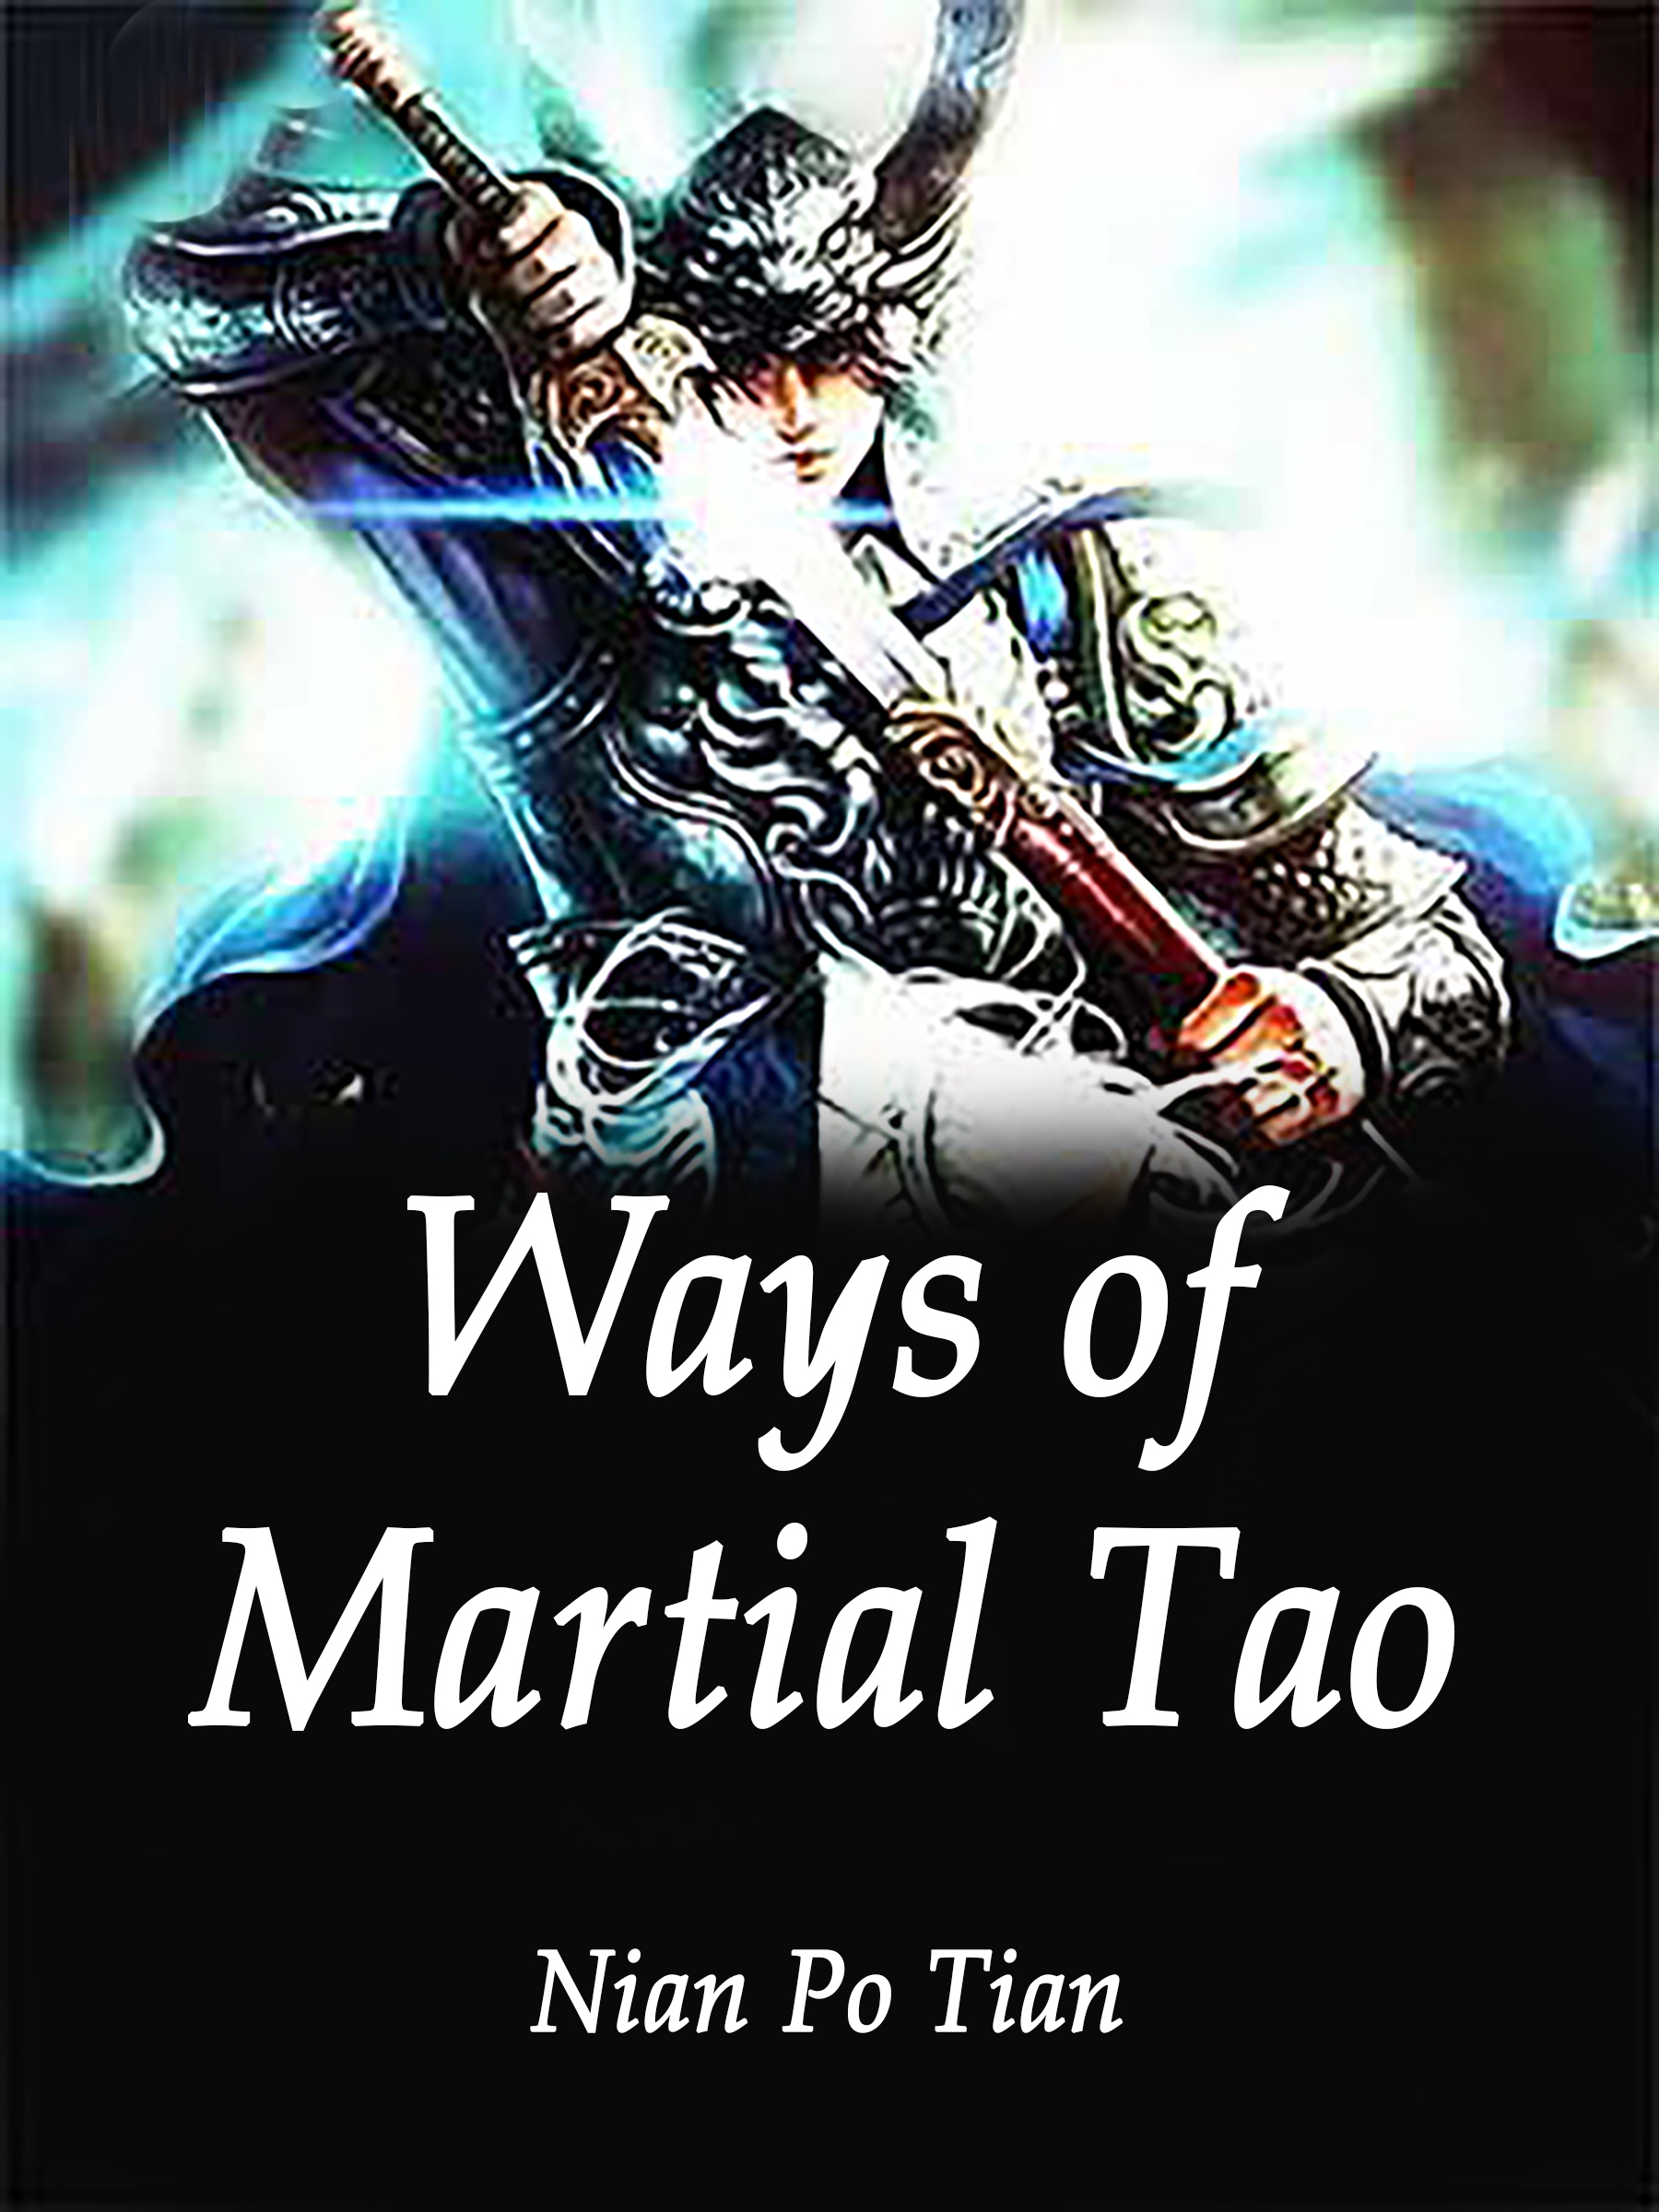 Ways of Martial Tao